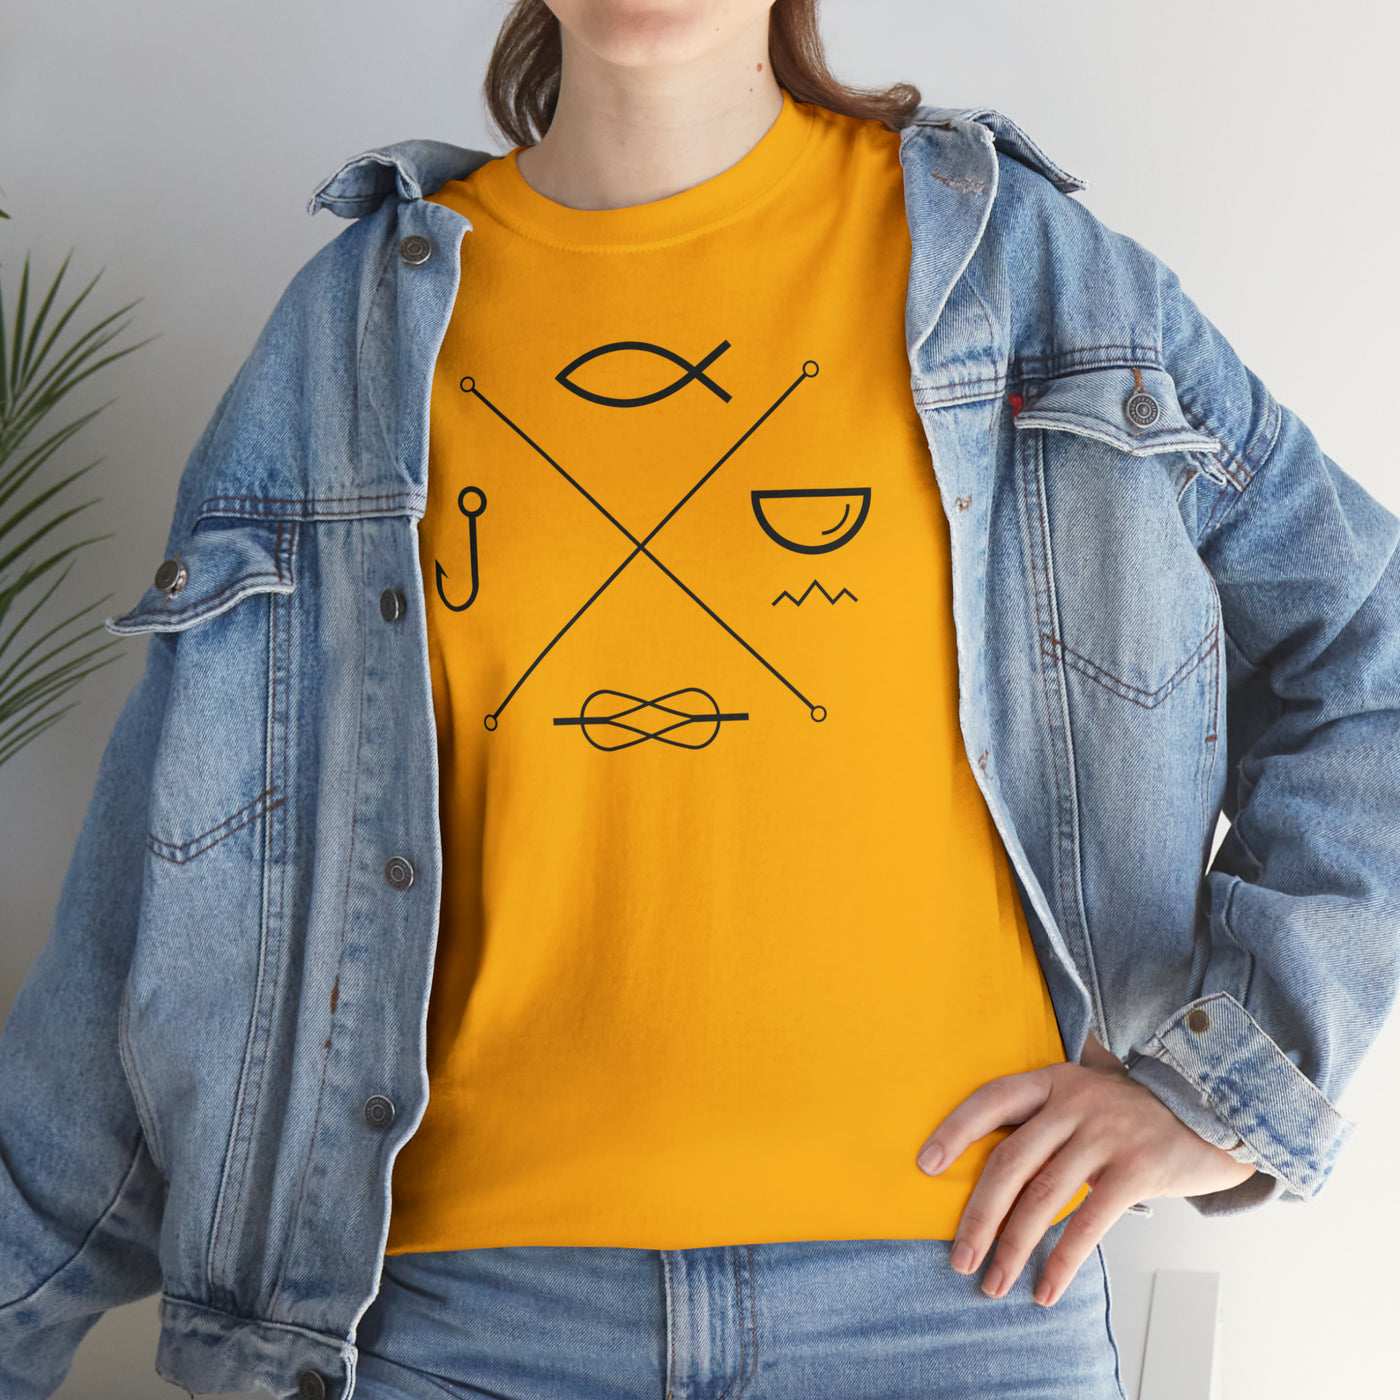 Fishing Planet Stamp T-Shirt (EU shipping)